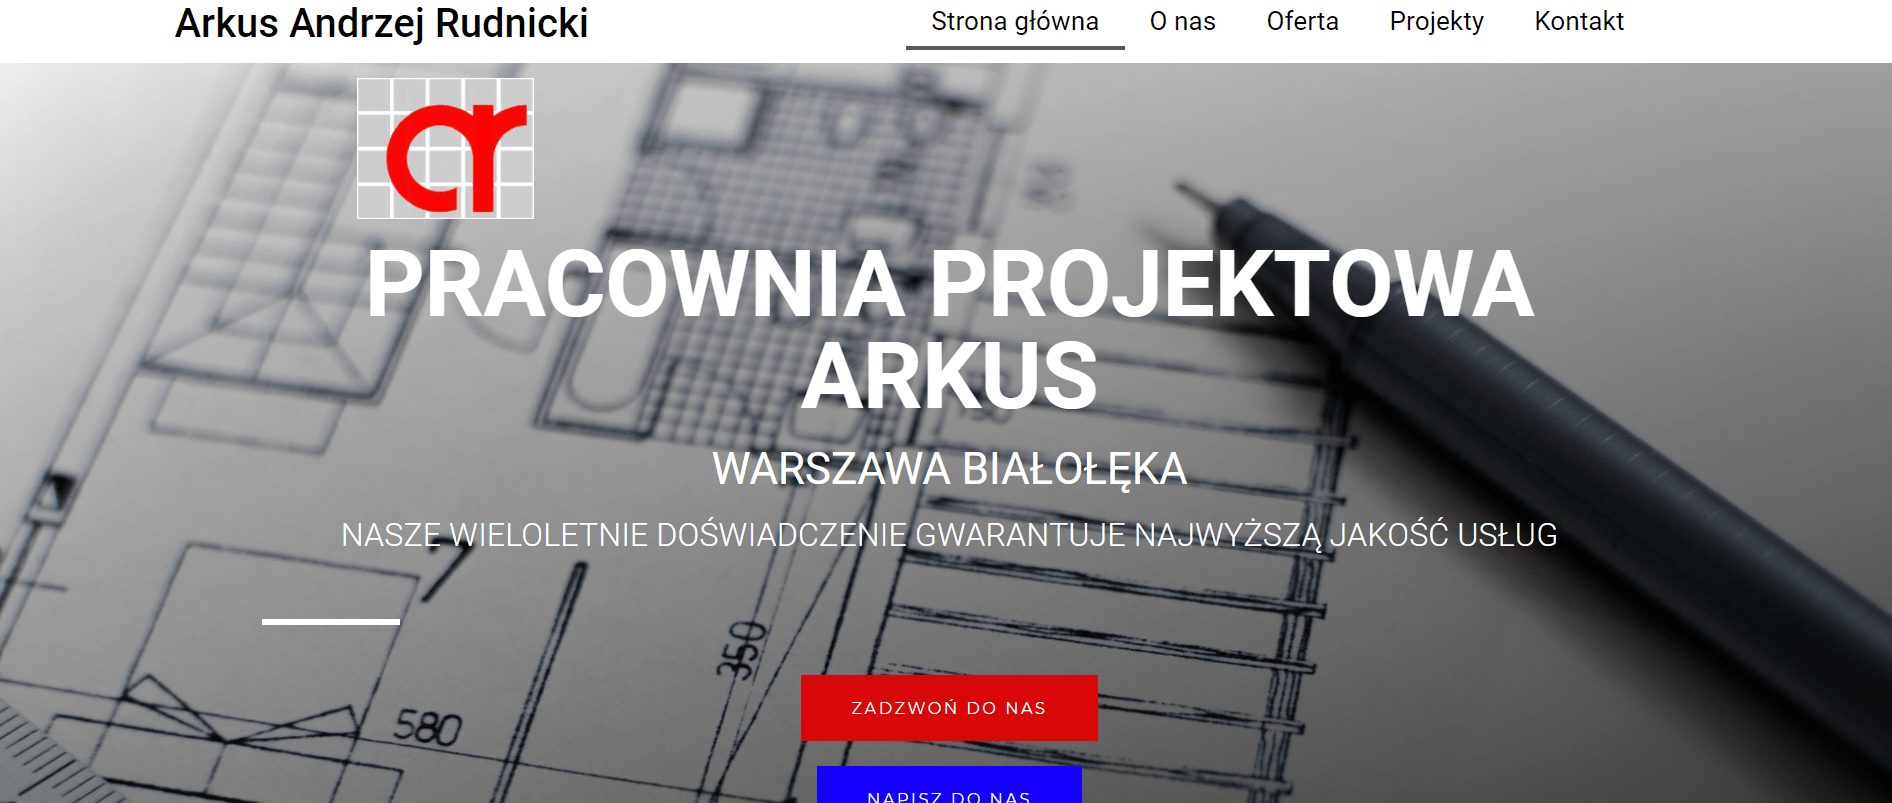 Strona internetowa firmy arkus andrzej rudnicki